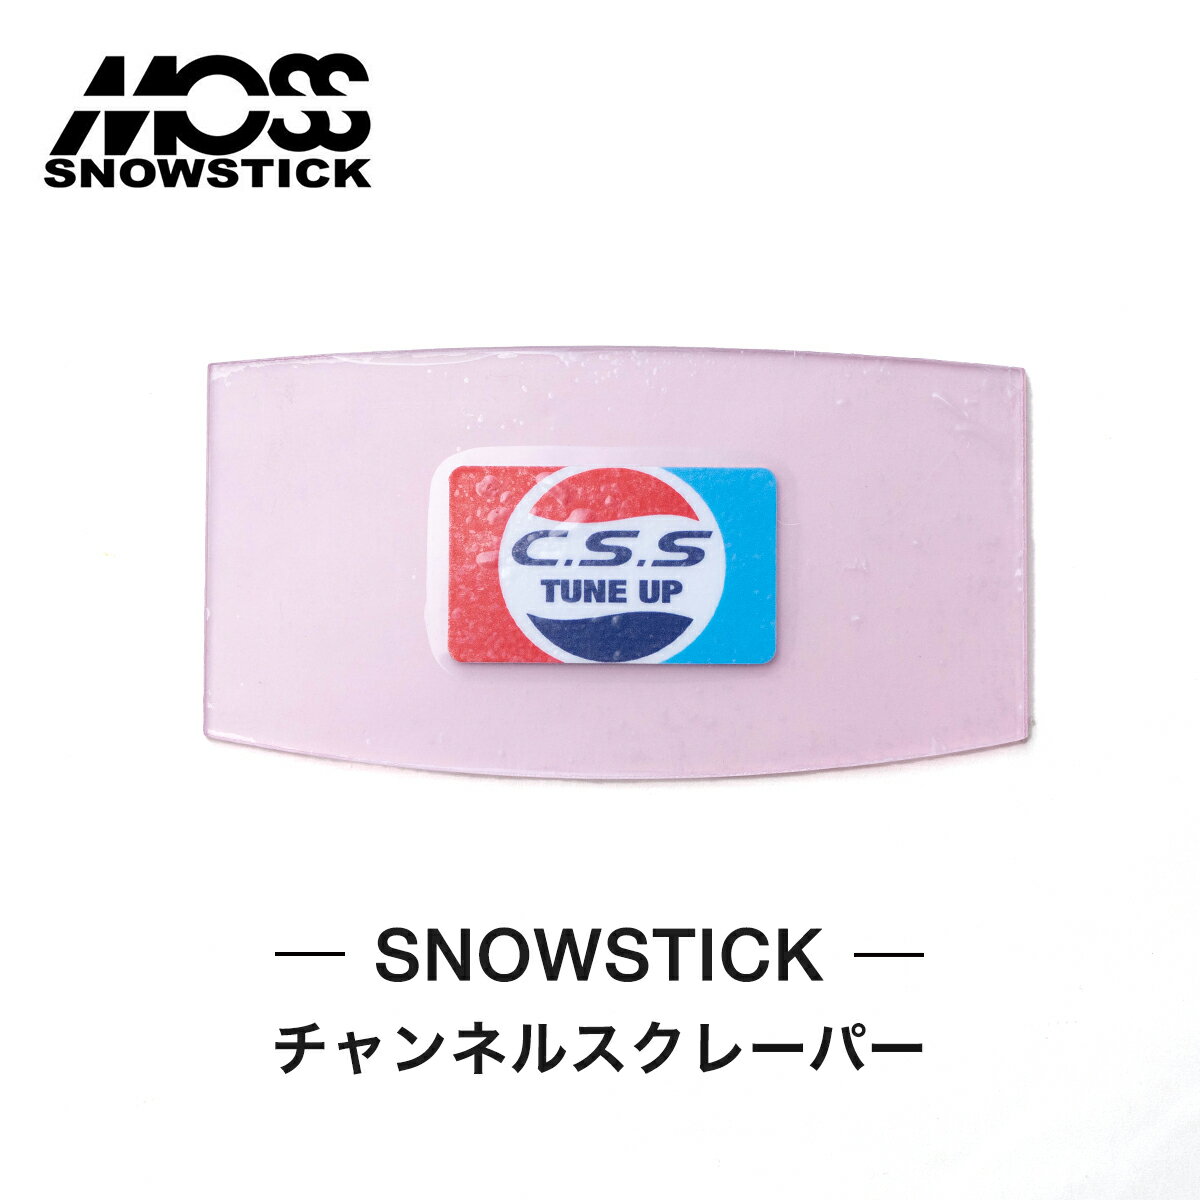 モス スノースティック スクレーパー MOSS SNOWSTICK チャンネルスクレーパー Channel Scraper スノーボード スノボ スクレイパー ワックス ワキシング スクレーピング メンテナンス用品 スノーボードツール 正規品